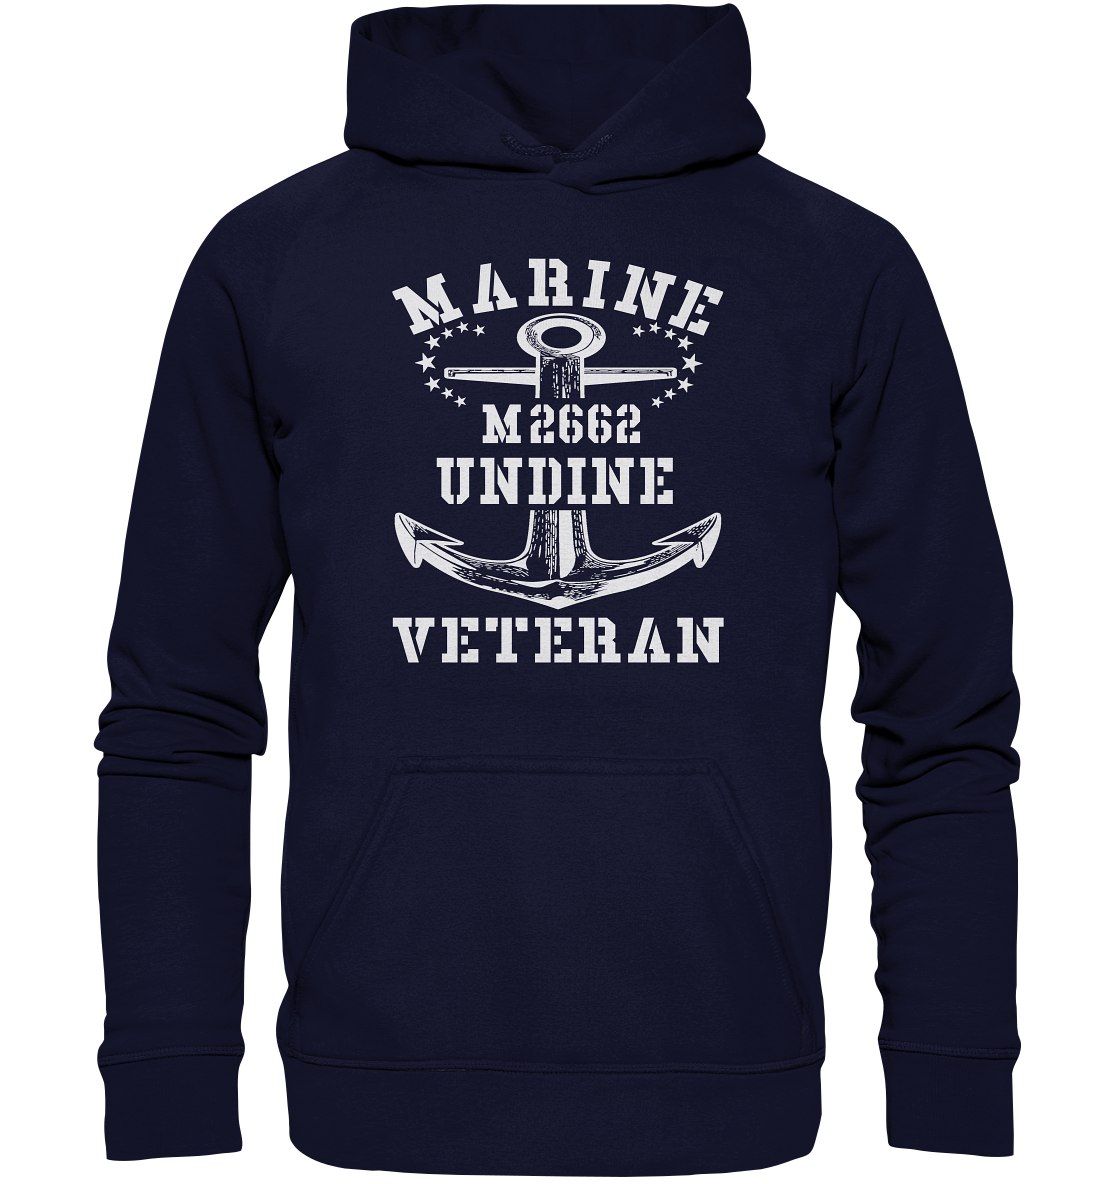 BiMi M2662 UNDINE Marine Veteran - Basic Unisex Hoodie